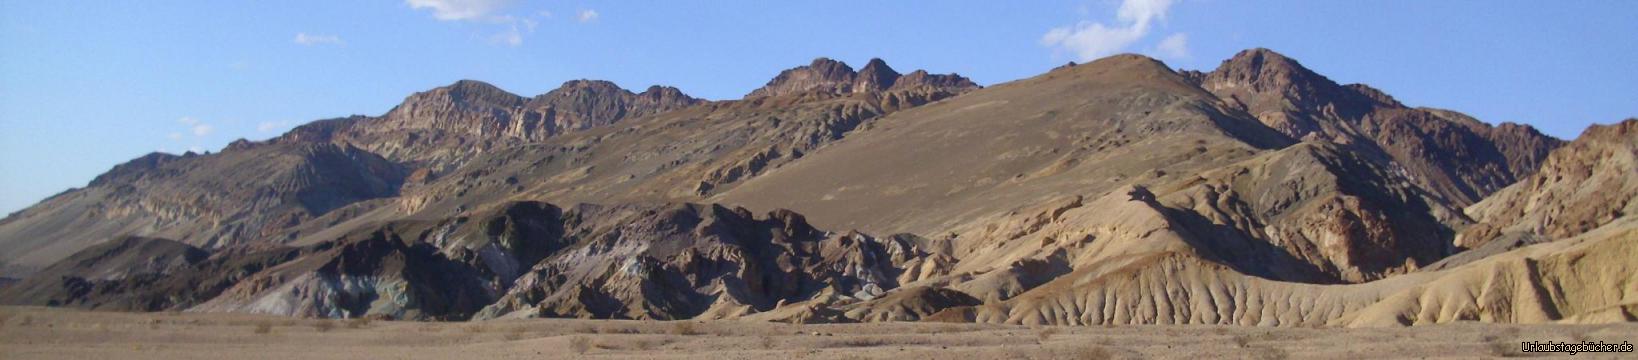 Artists Palette: an den Hängen der Black Mountains im Death Valley National Park liegt Artist’s Palette,
berühmt für seine vielfarbigen Gesteinsformationen mit Farben von rot, dunkelrot über türkis bis grün